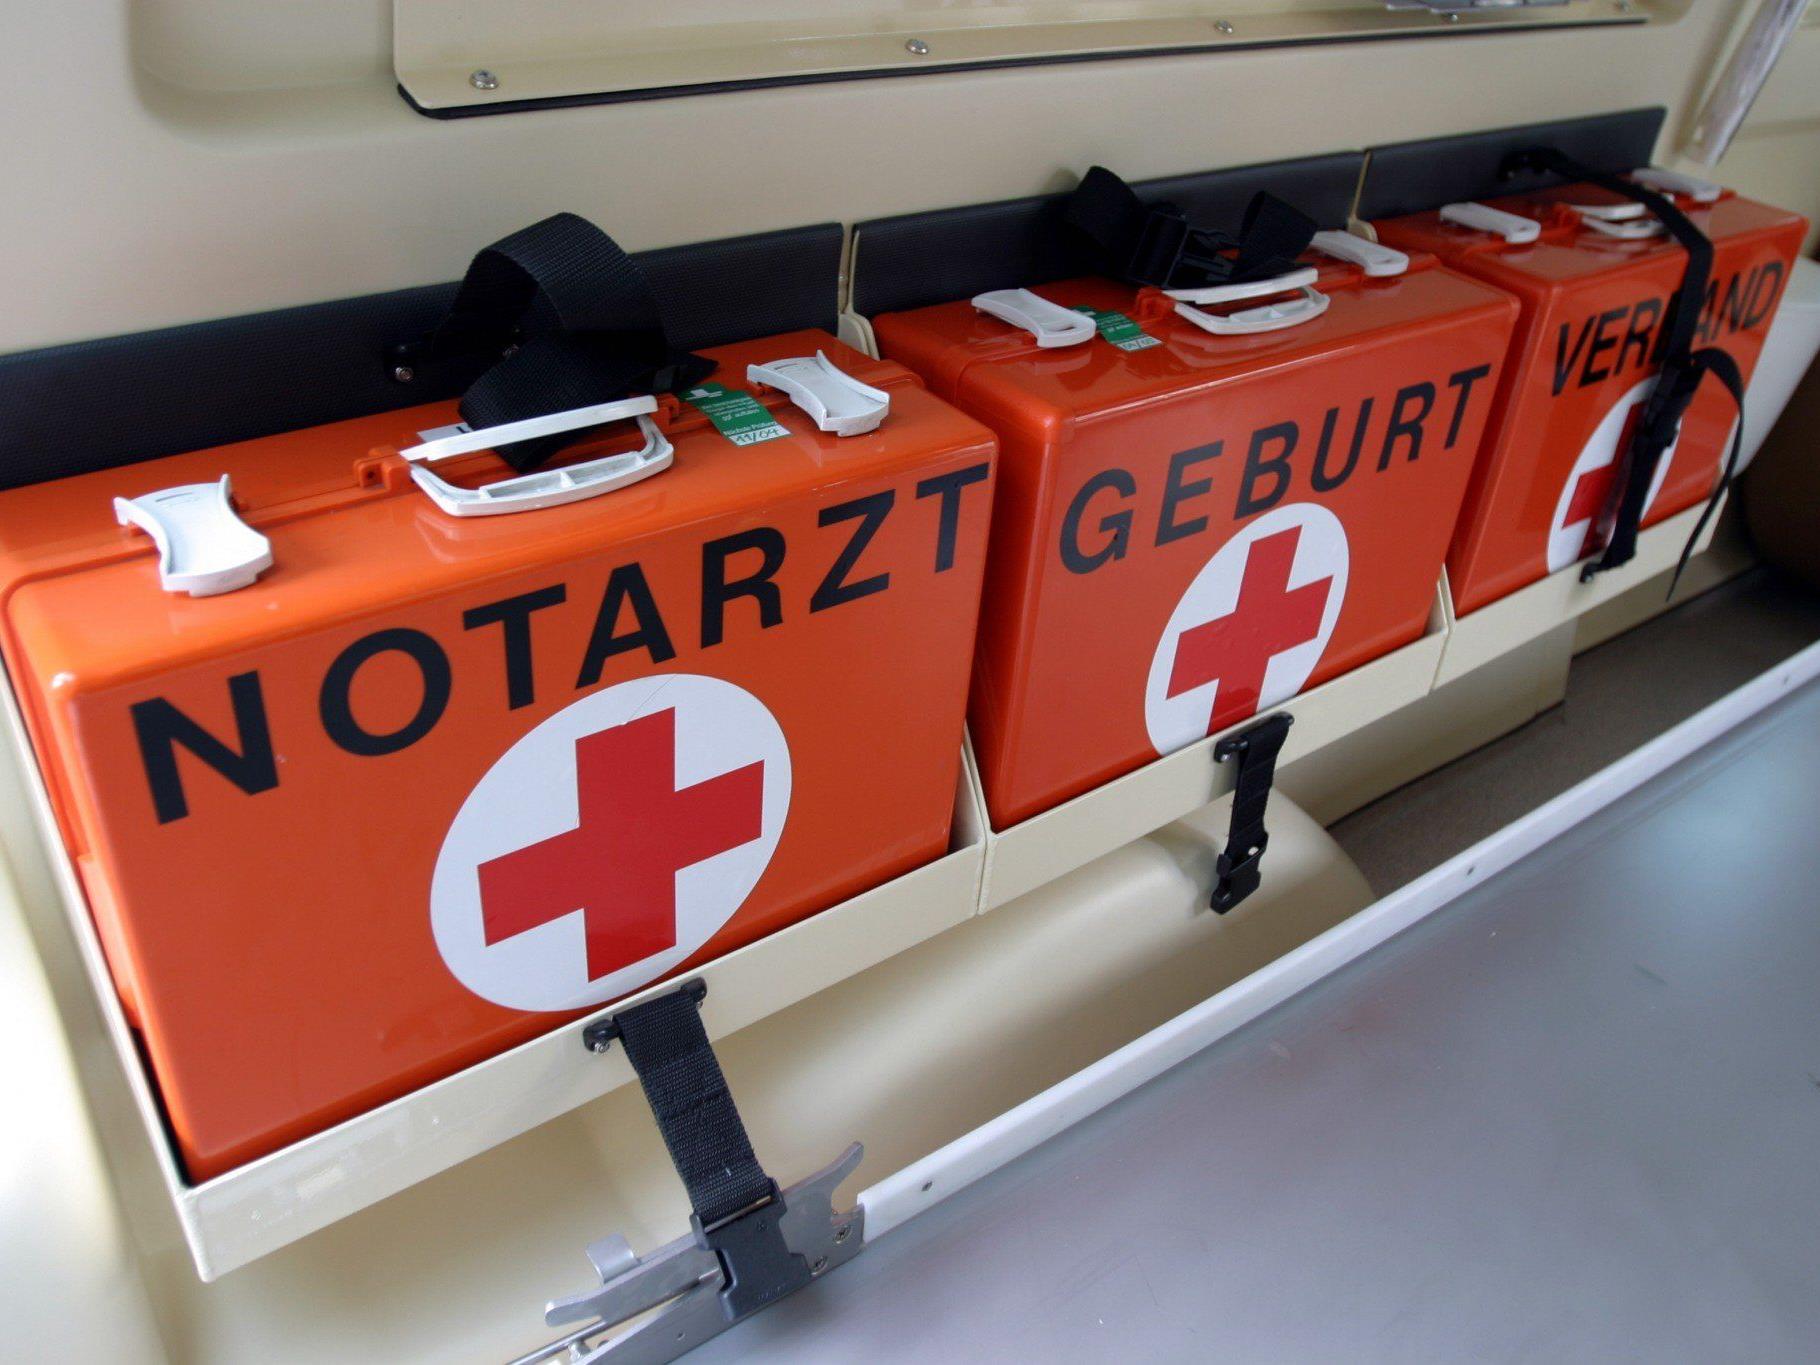 Der Verletzte wurde mit dem Notarzthubschrauber ins LKH Feldkirch geflogen.